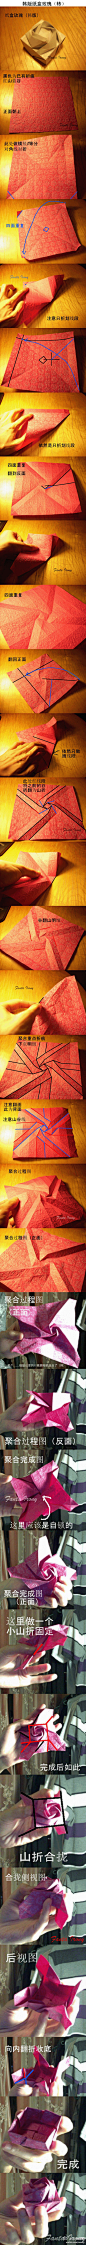 韩版纸盒玫瑰折纸~www.meethere.cn